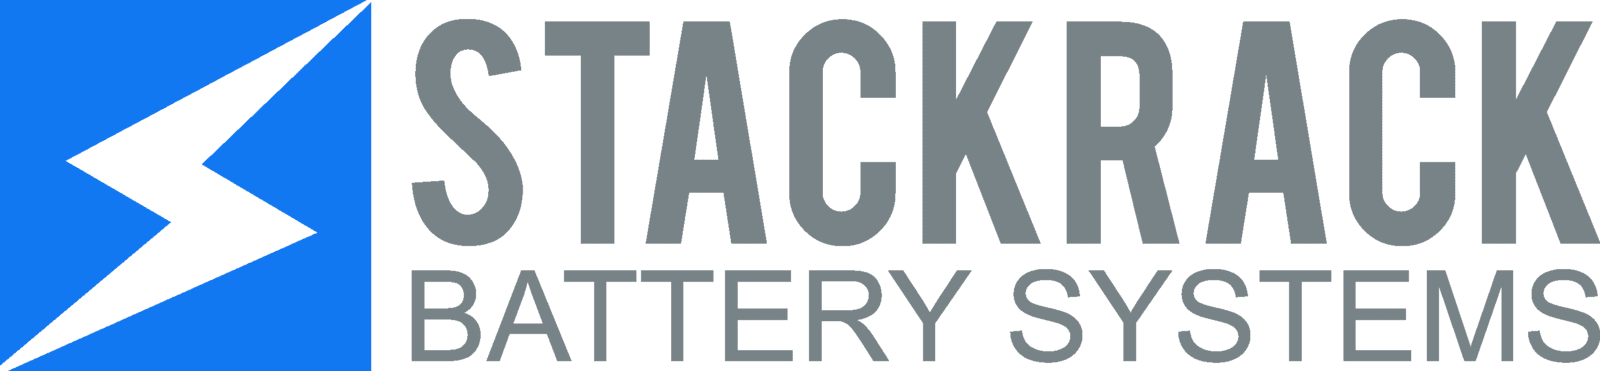 StackRack Logo.png